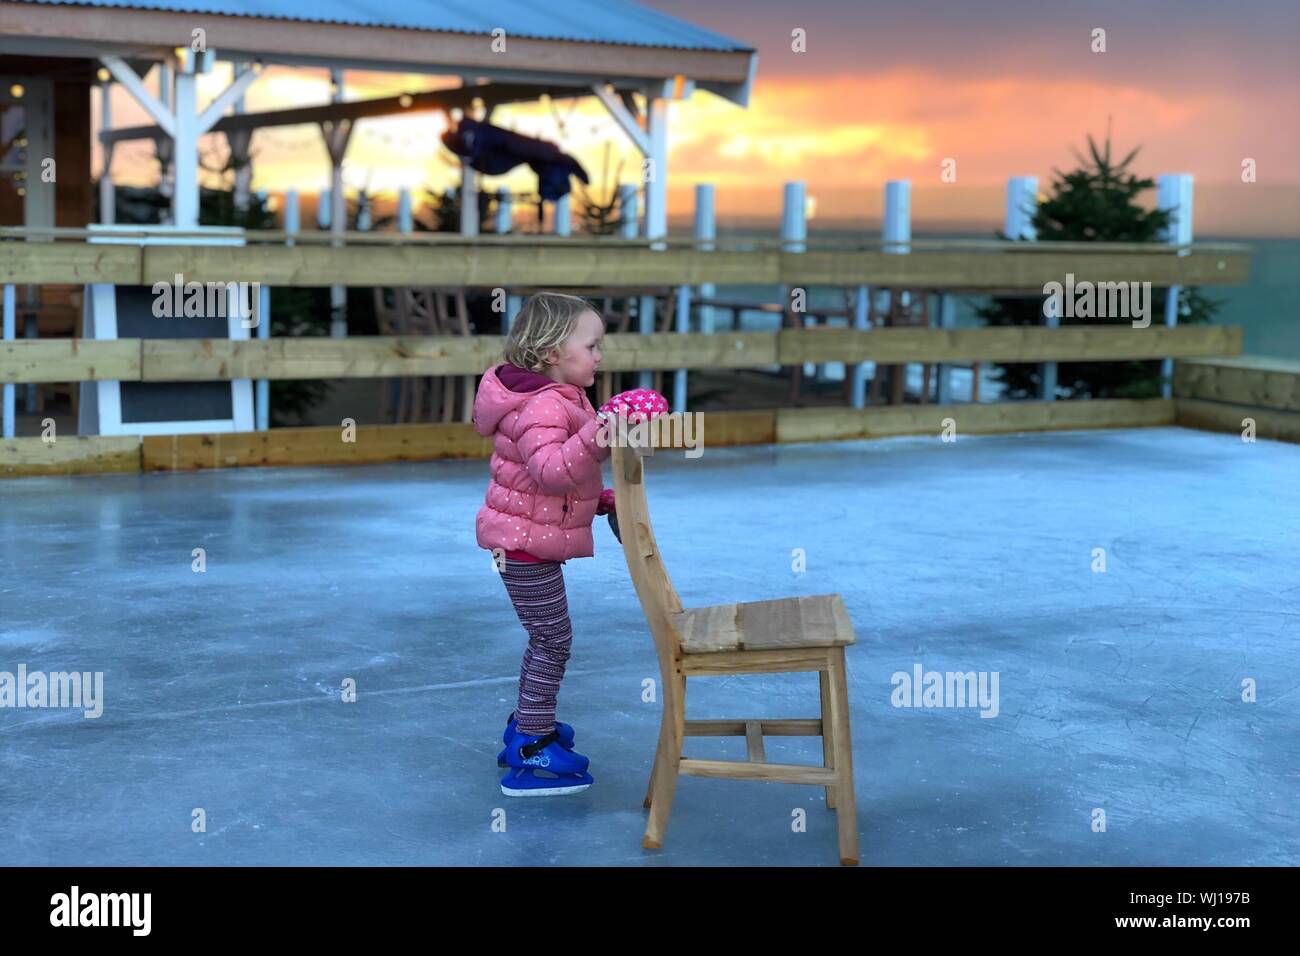 Mädchen, dass Stuhl beim Schlittschuhlaufen auf der Eisbahn Stockfotografie  - Alamy